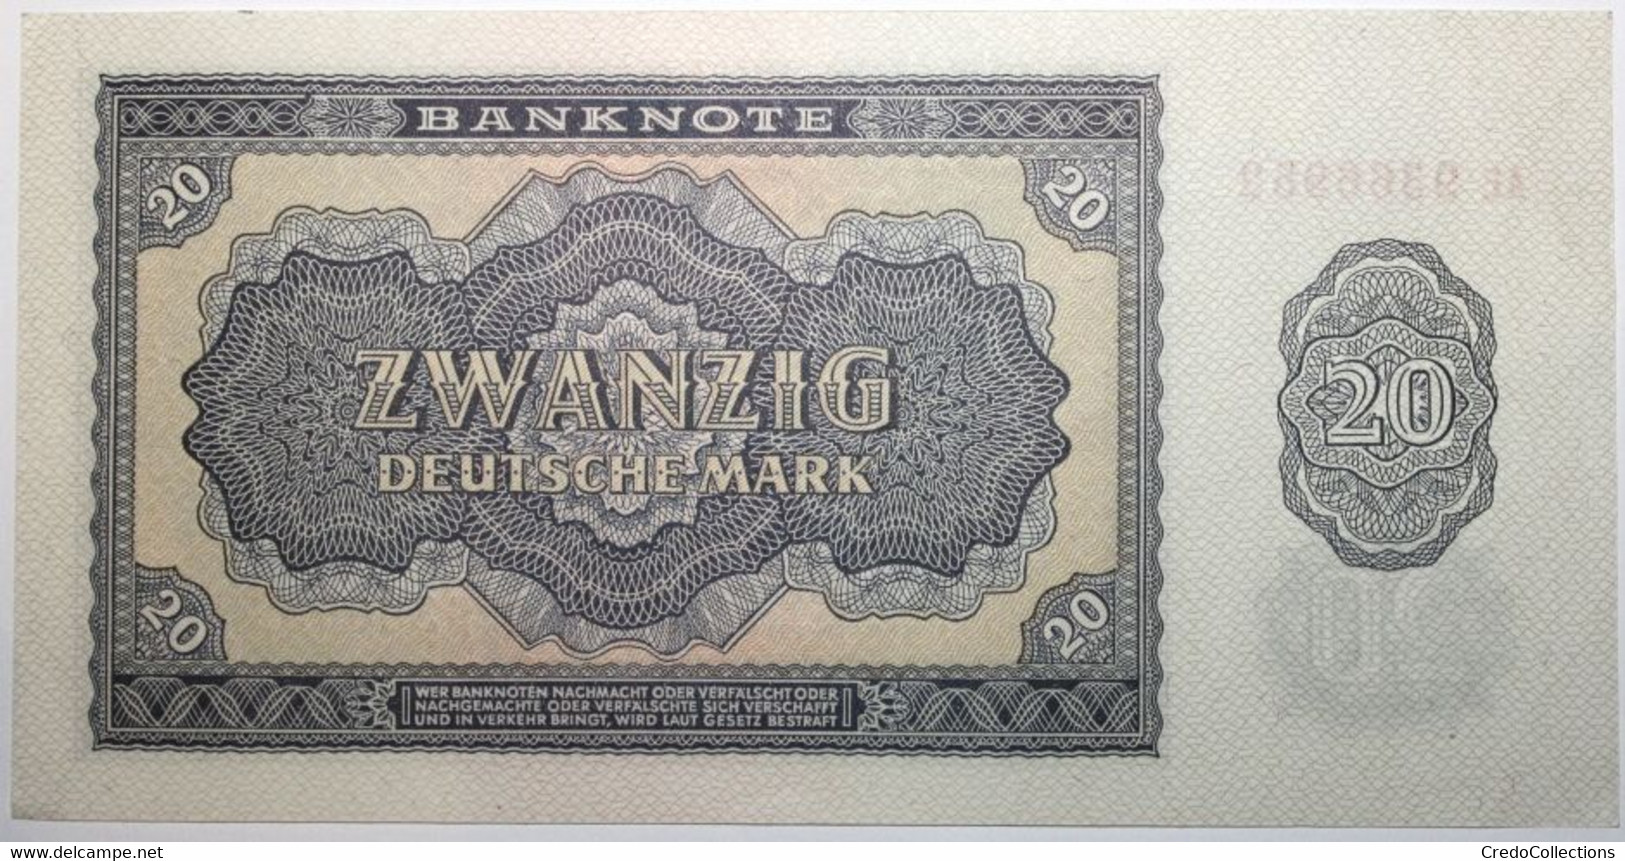 Allemagne De L'Est - 20 Deutsche Mark - 1955 - PICK 19a - SPL - 20 Deutsche Mark